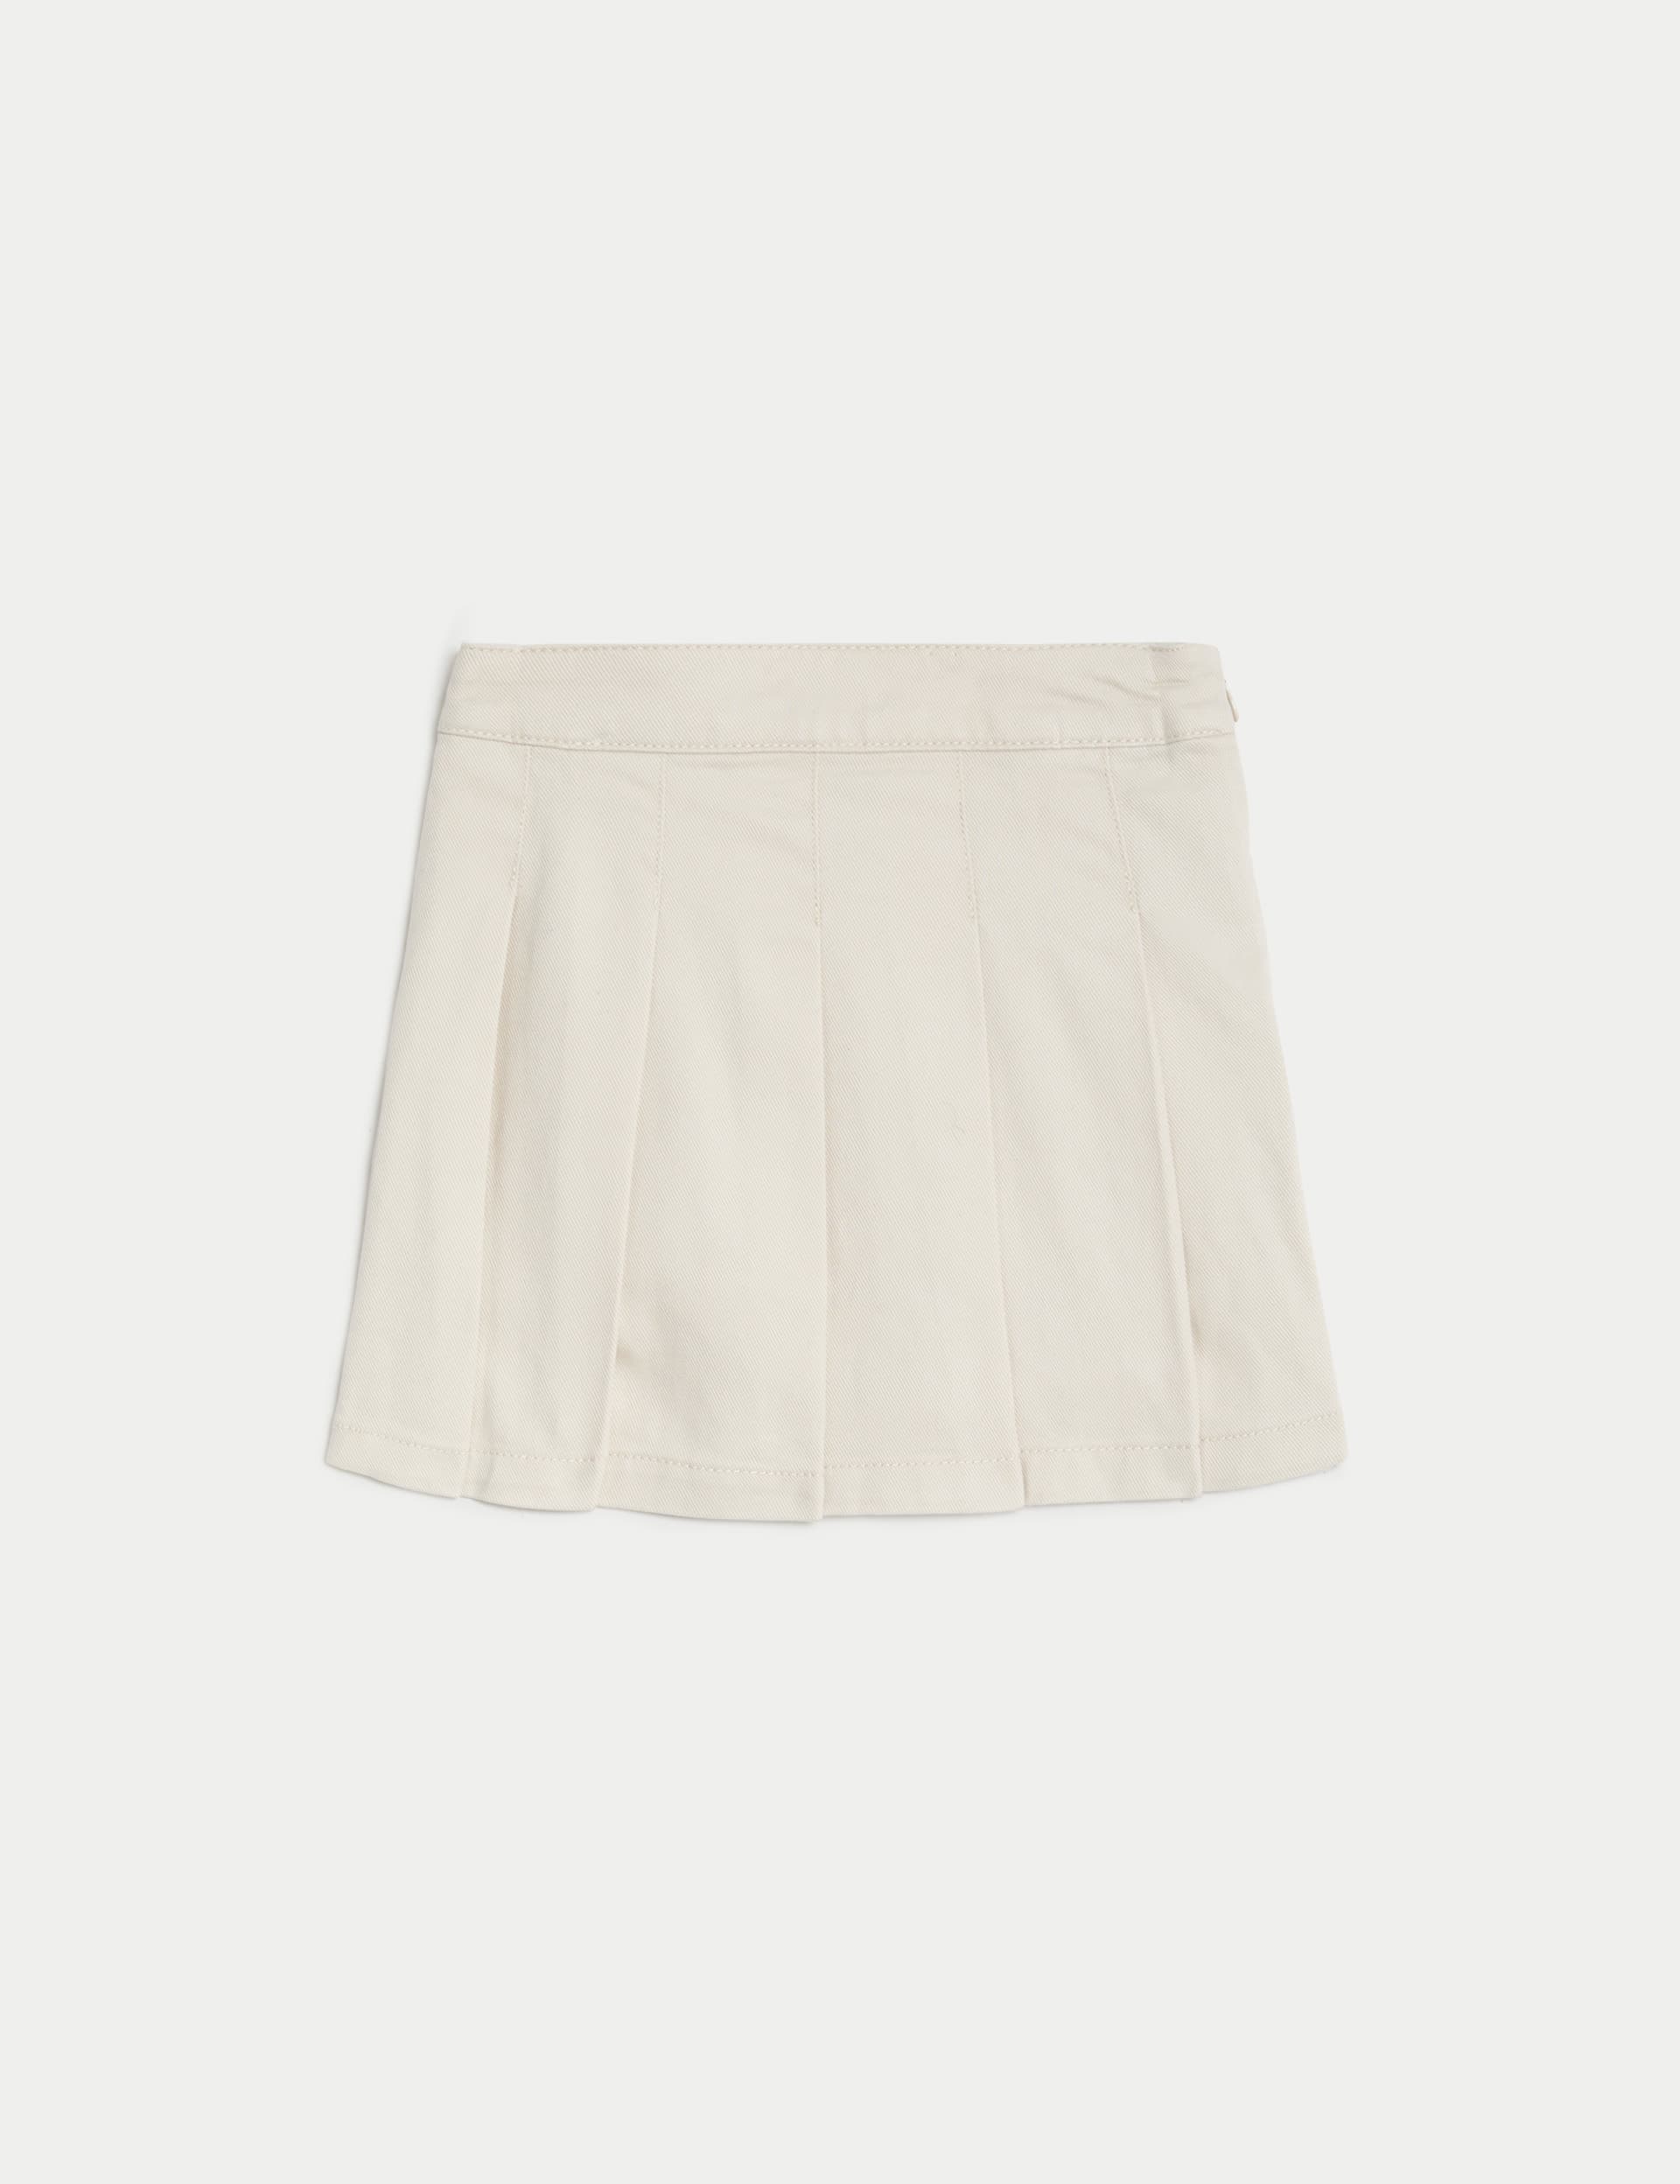 Denim Tennis Skirt (2-8 Yrs)